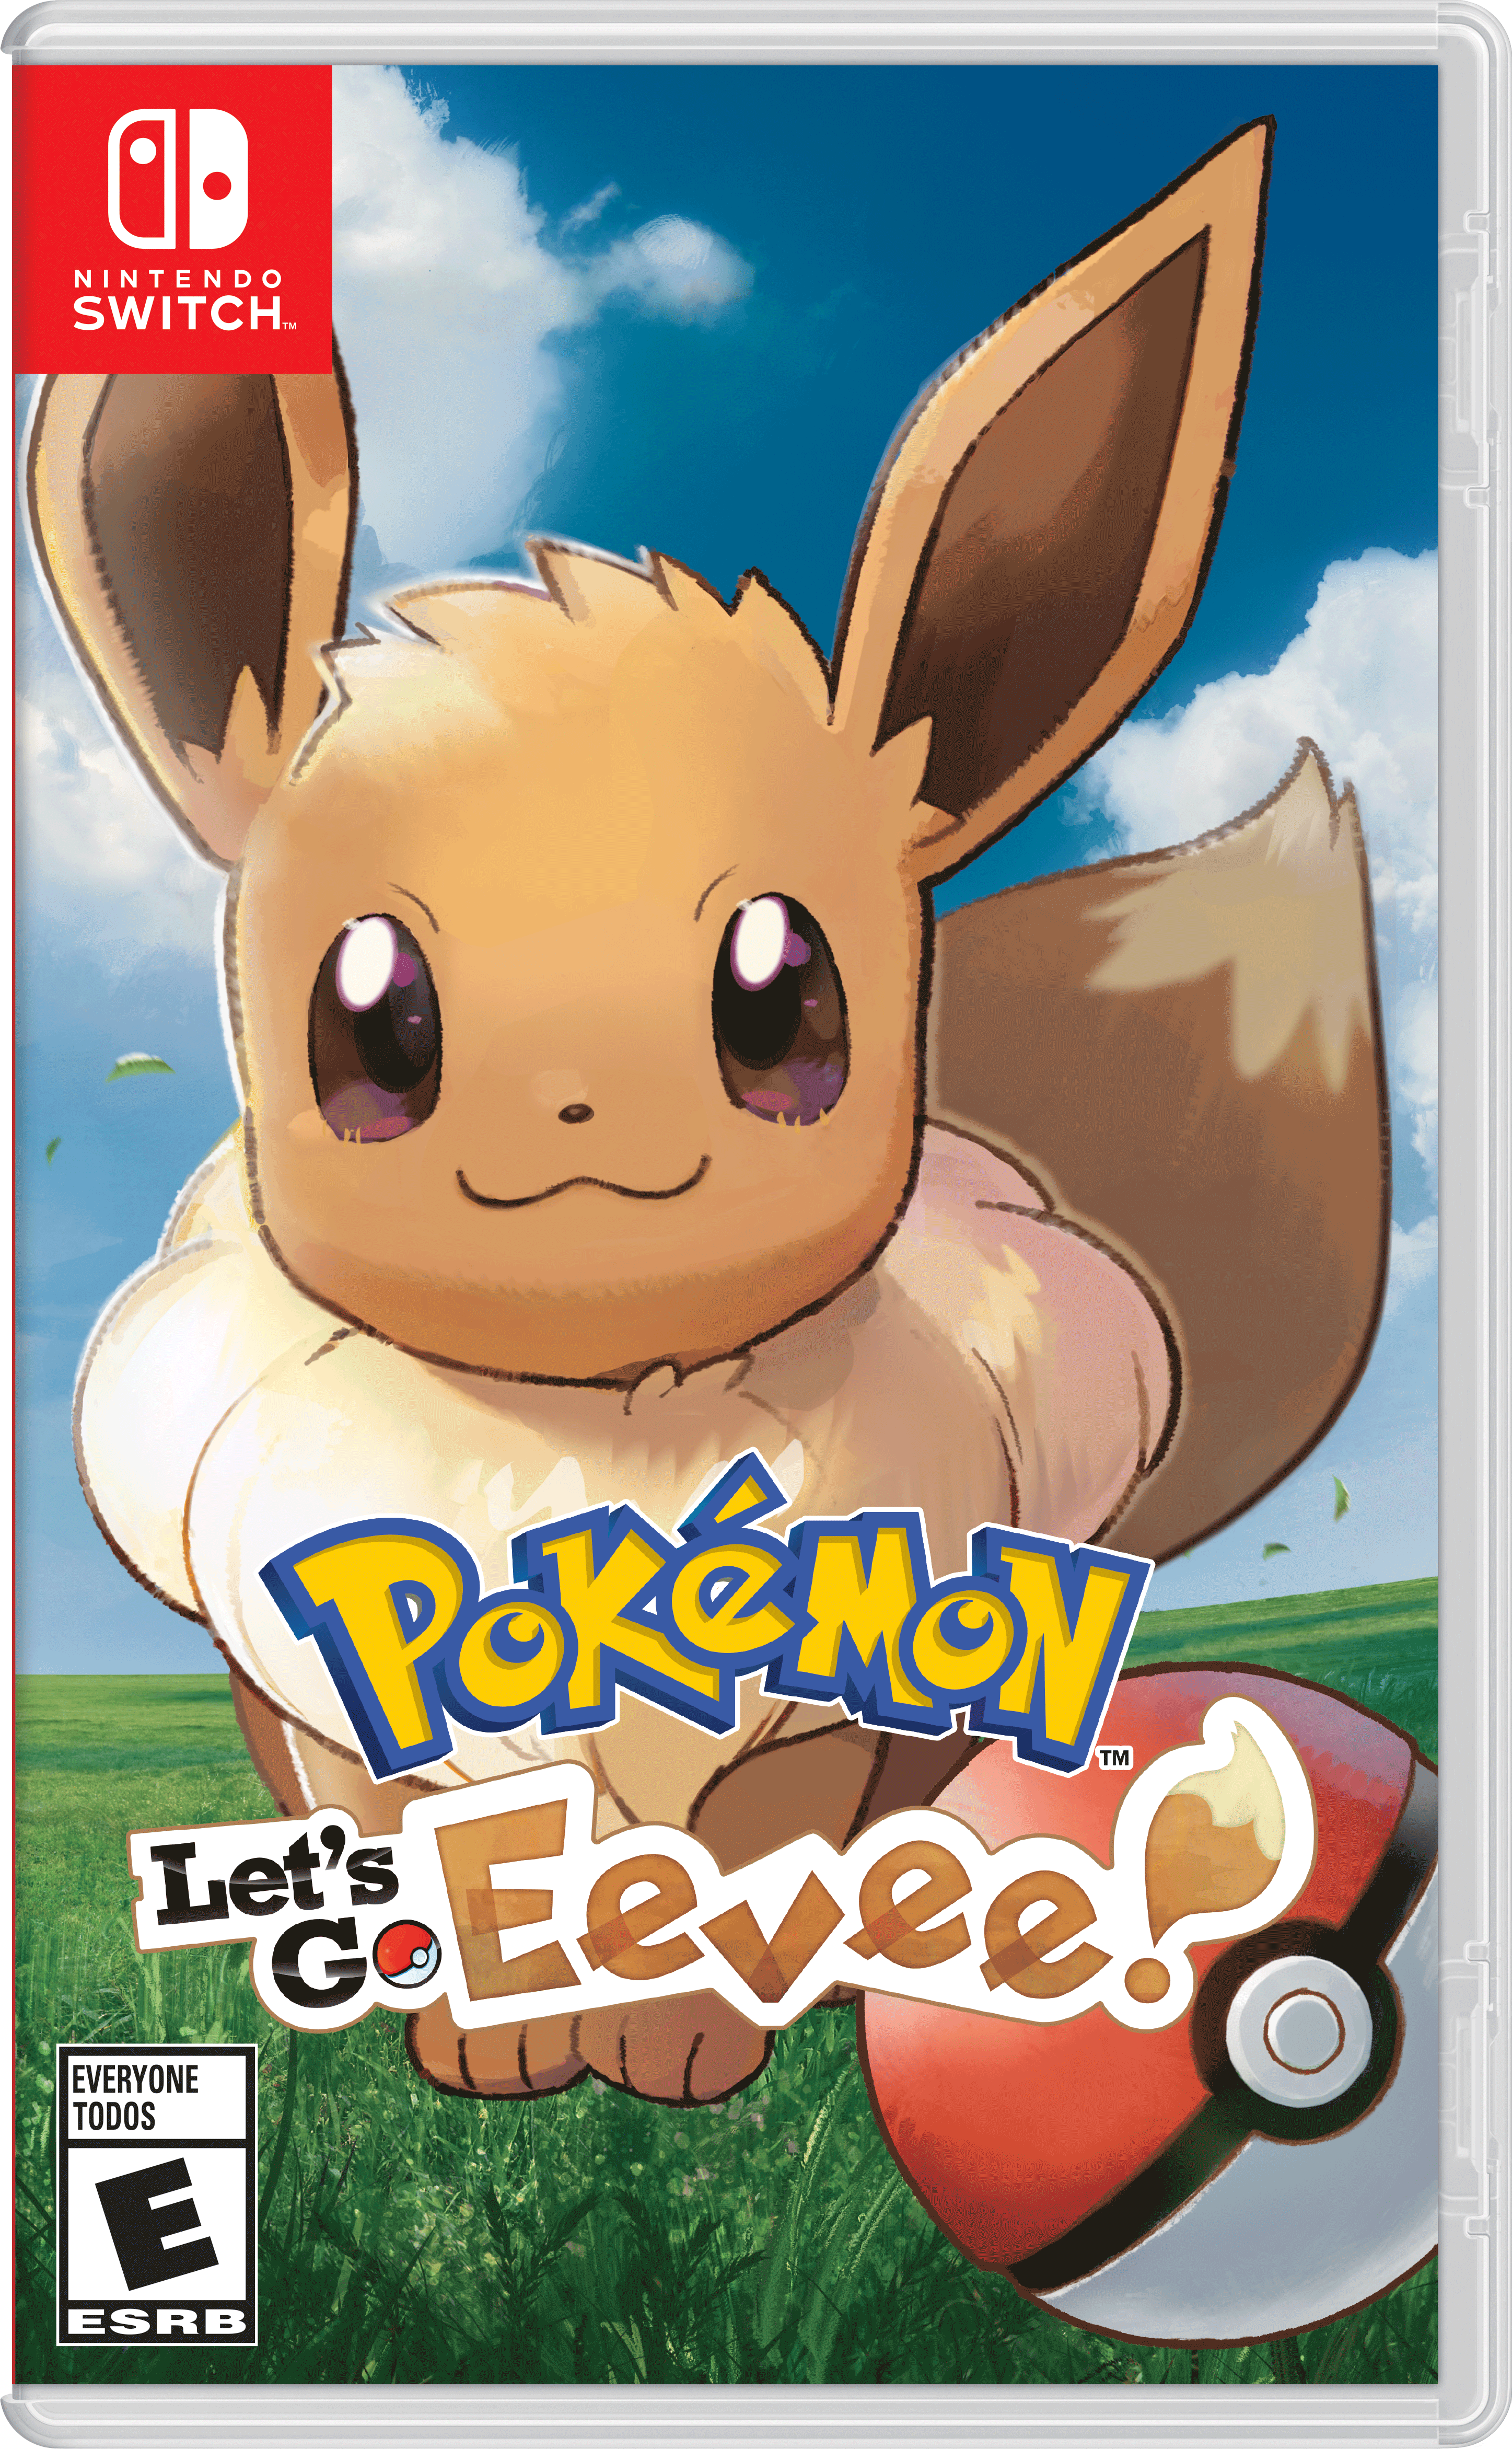 Eevee Games App Logo - Pokémon: Let's Go, Eevee! for Nintendo Switch - Nintendo Game Details